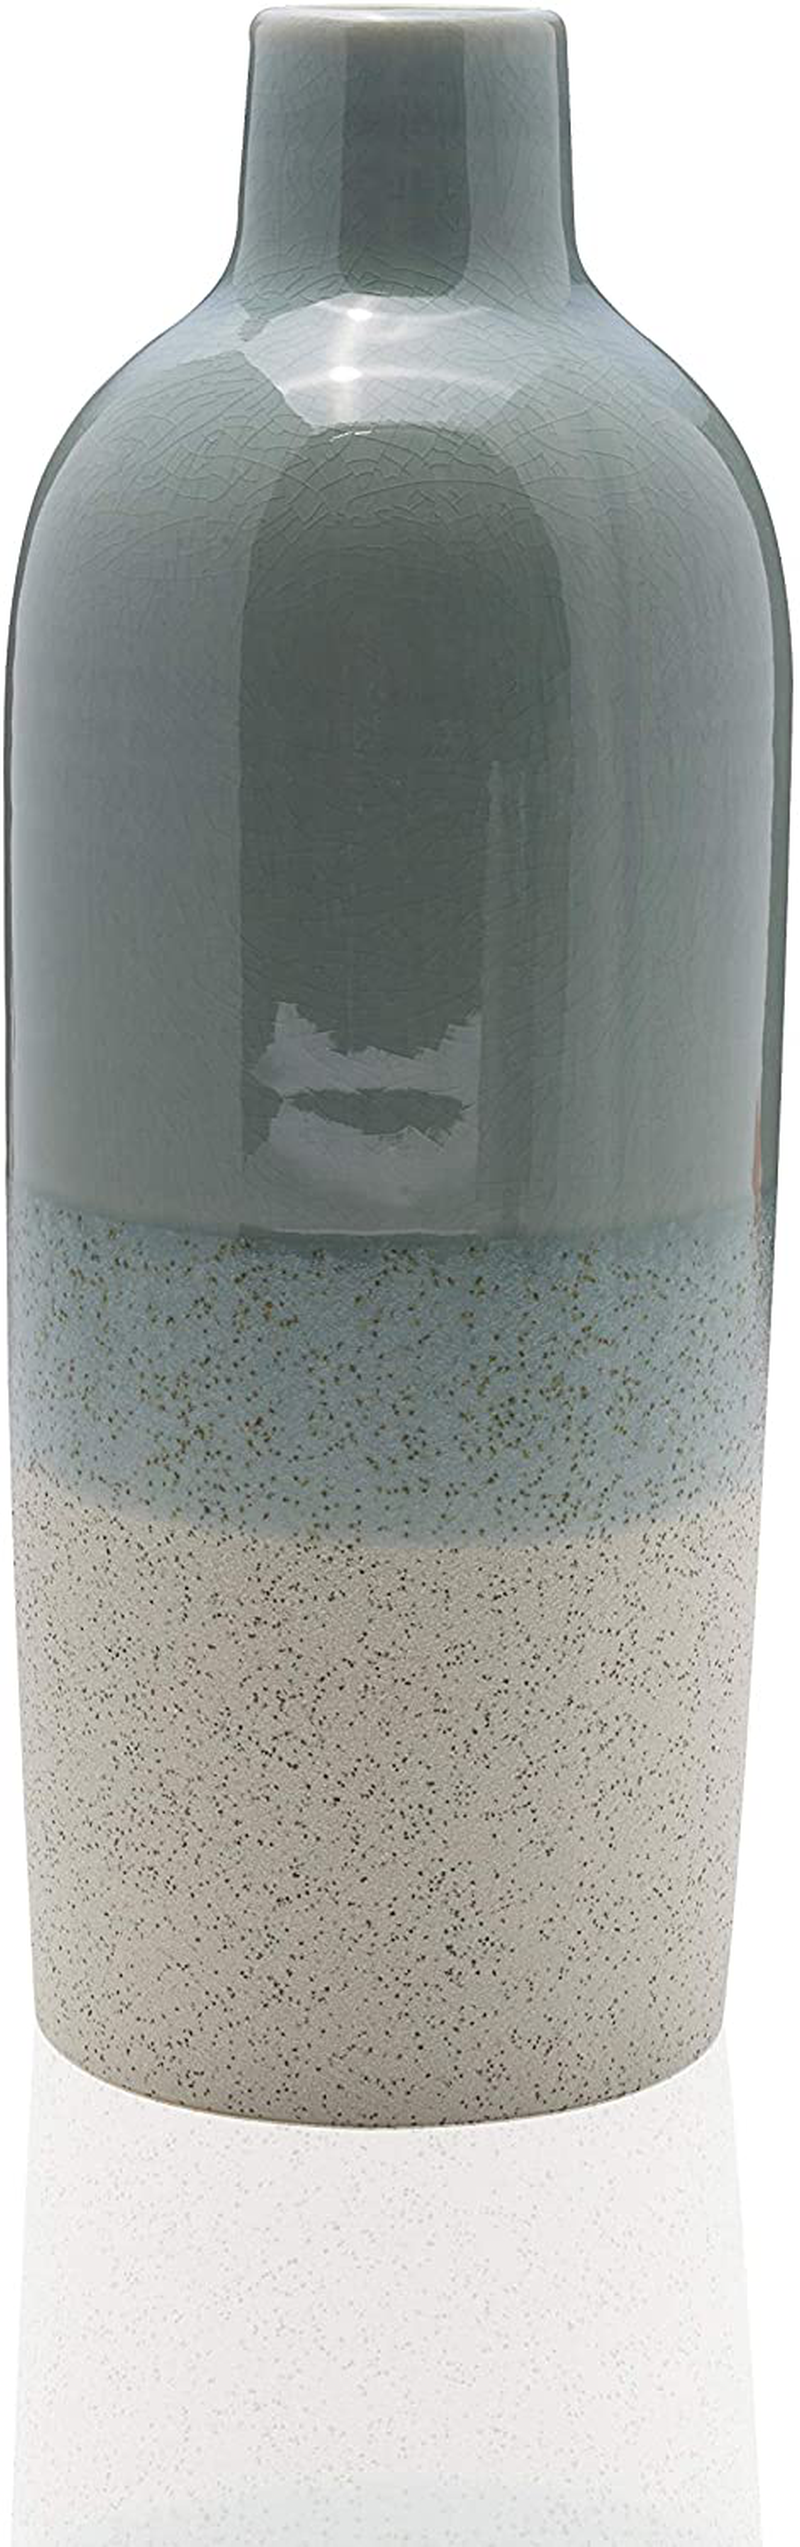 Scott Living Oasis Layered Ceramic Bottle Vase, 9 inch, Light Gray Home & Garden > Decor > Vases Scott Living 12 inch  